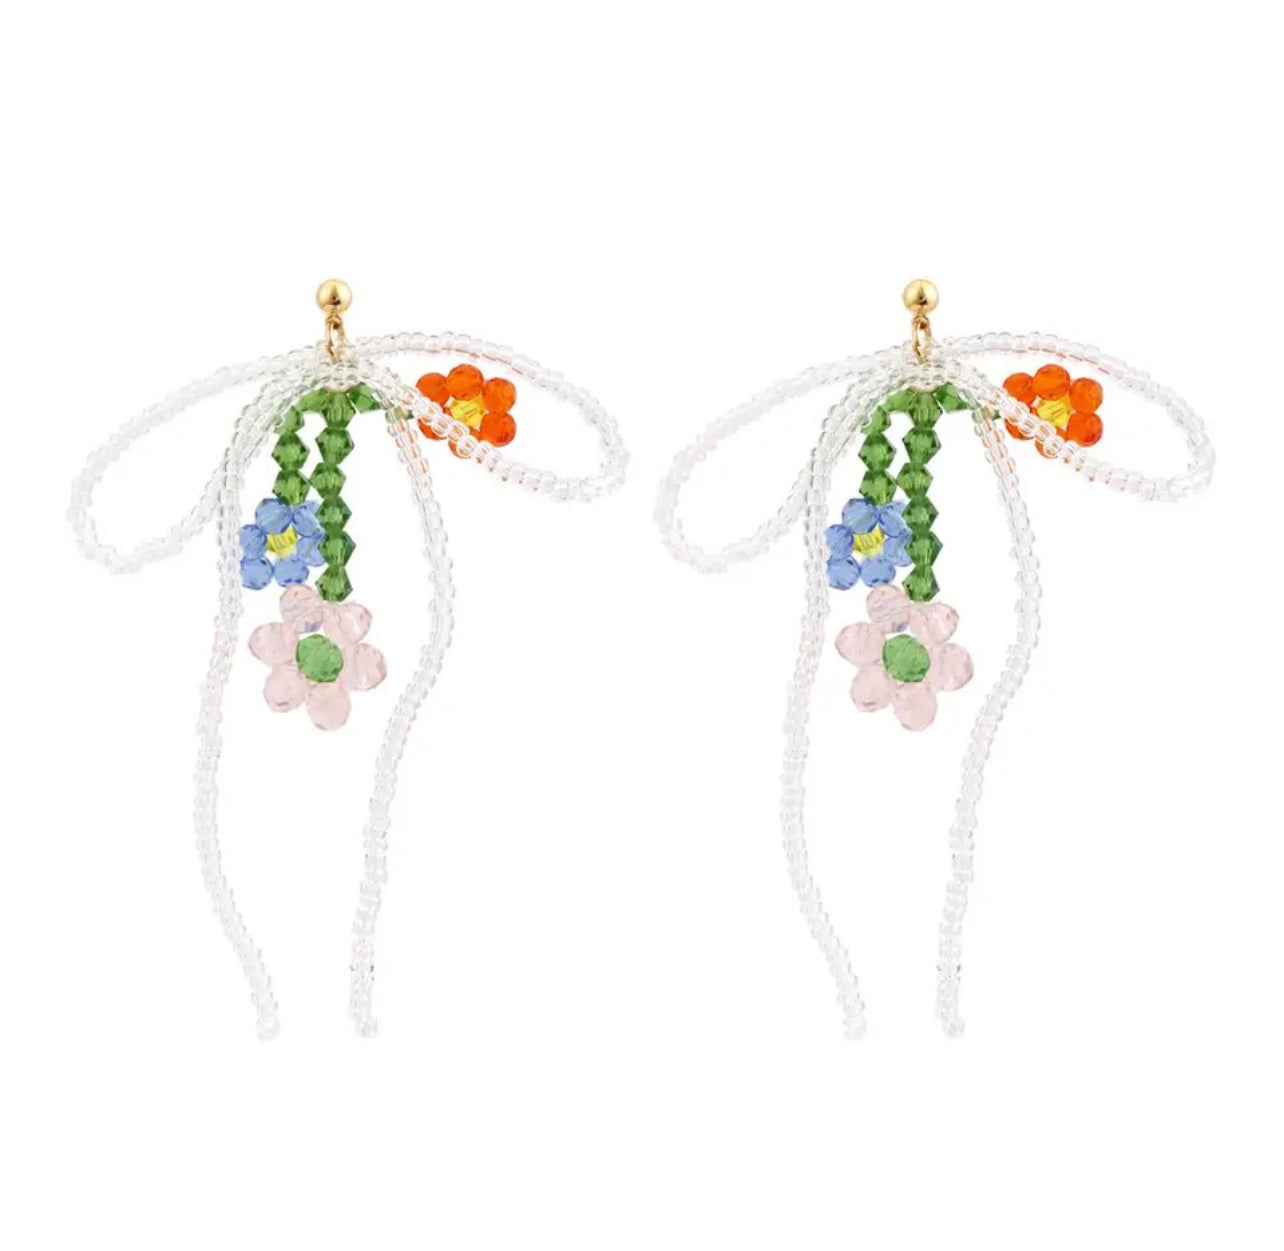 Handmade bow bouquet earrings